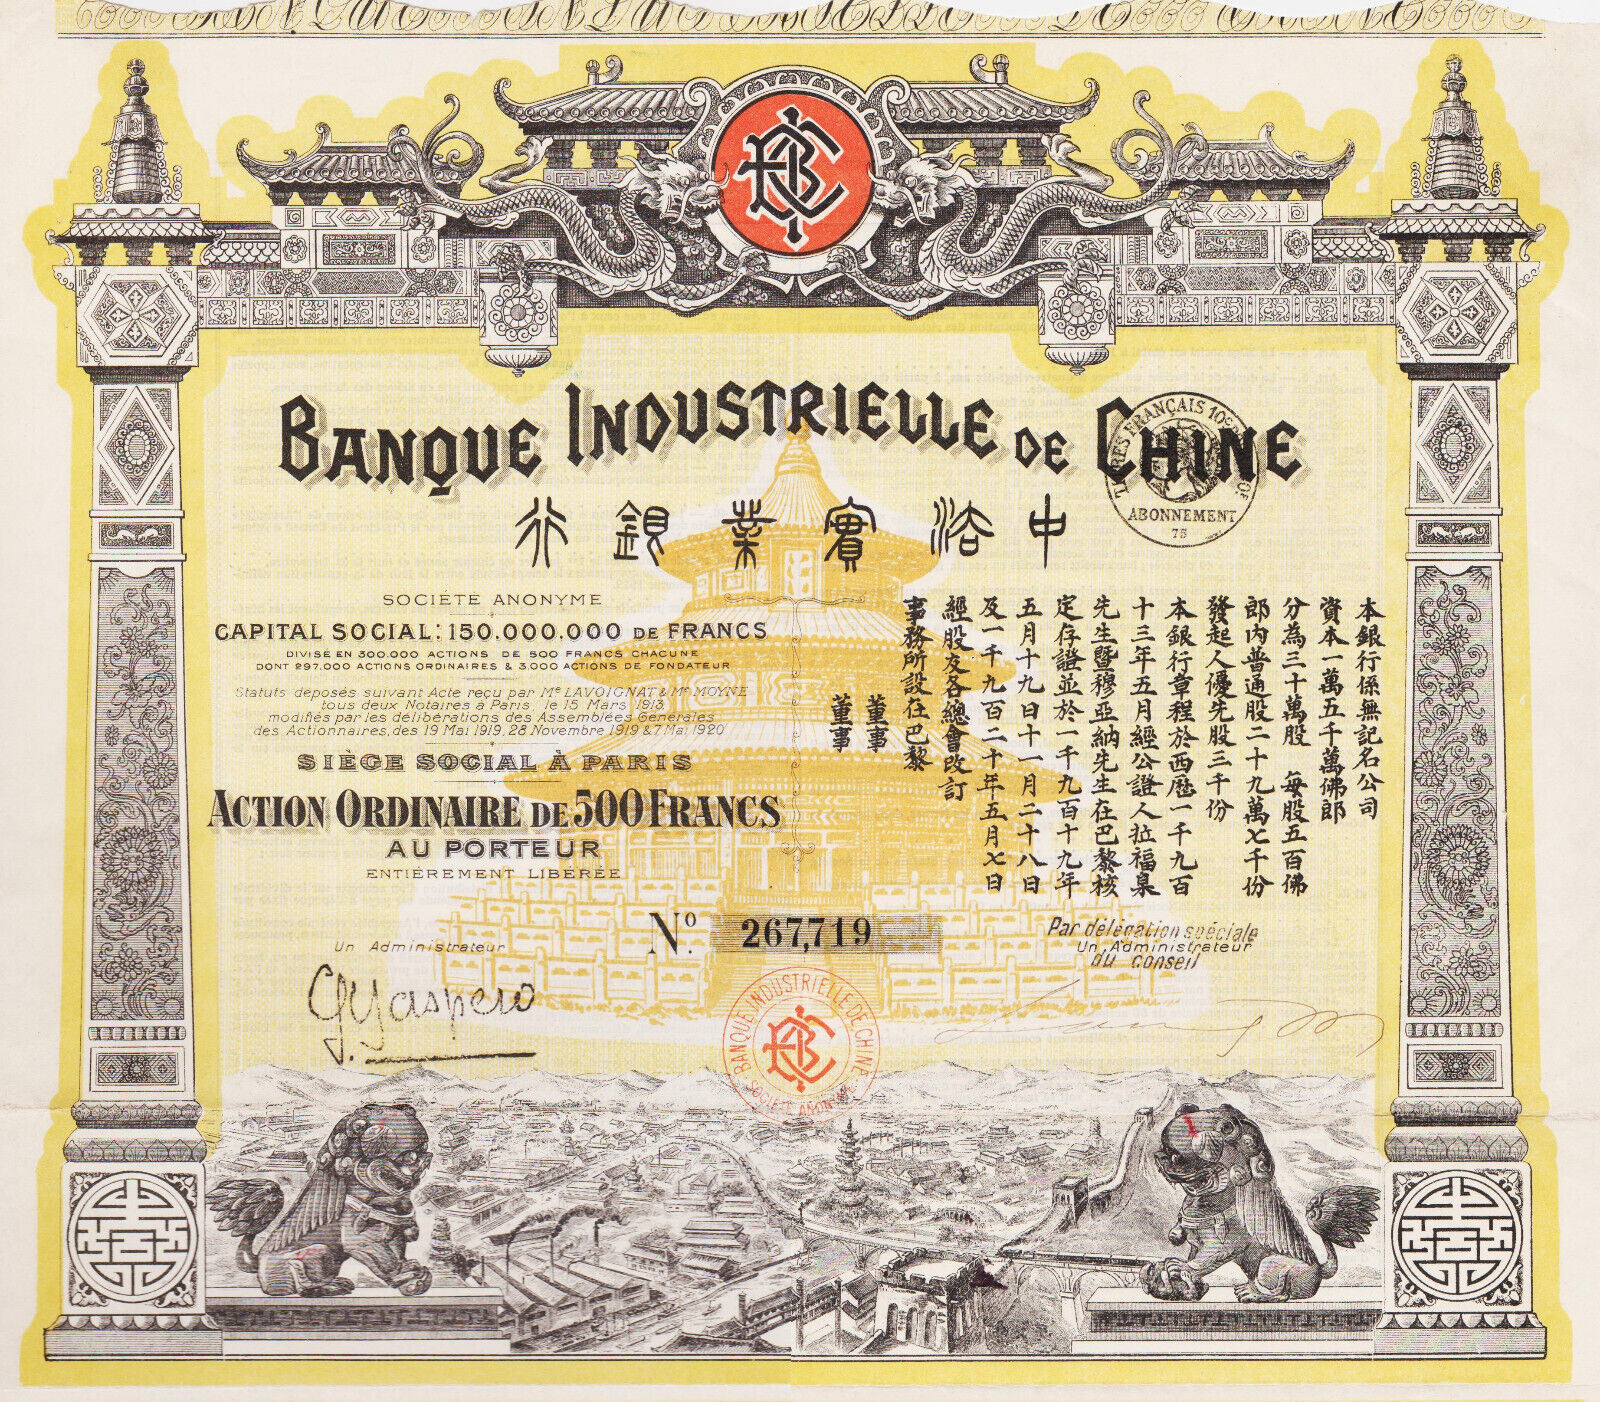 INDUSTRIAL BANK OF CHINA - ACTION 500 FRANCS 1920 - CHINA / CHINA N°267719